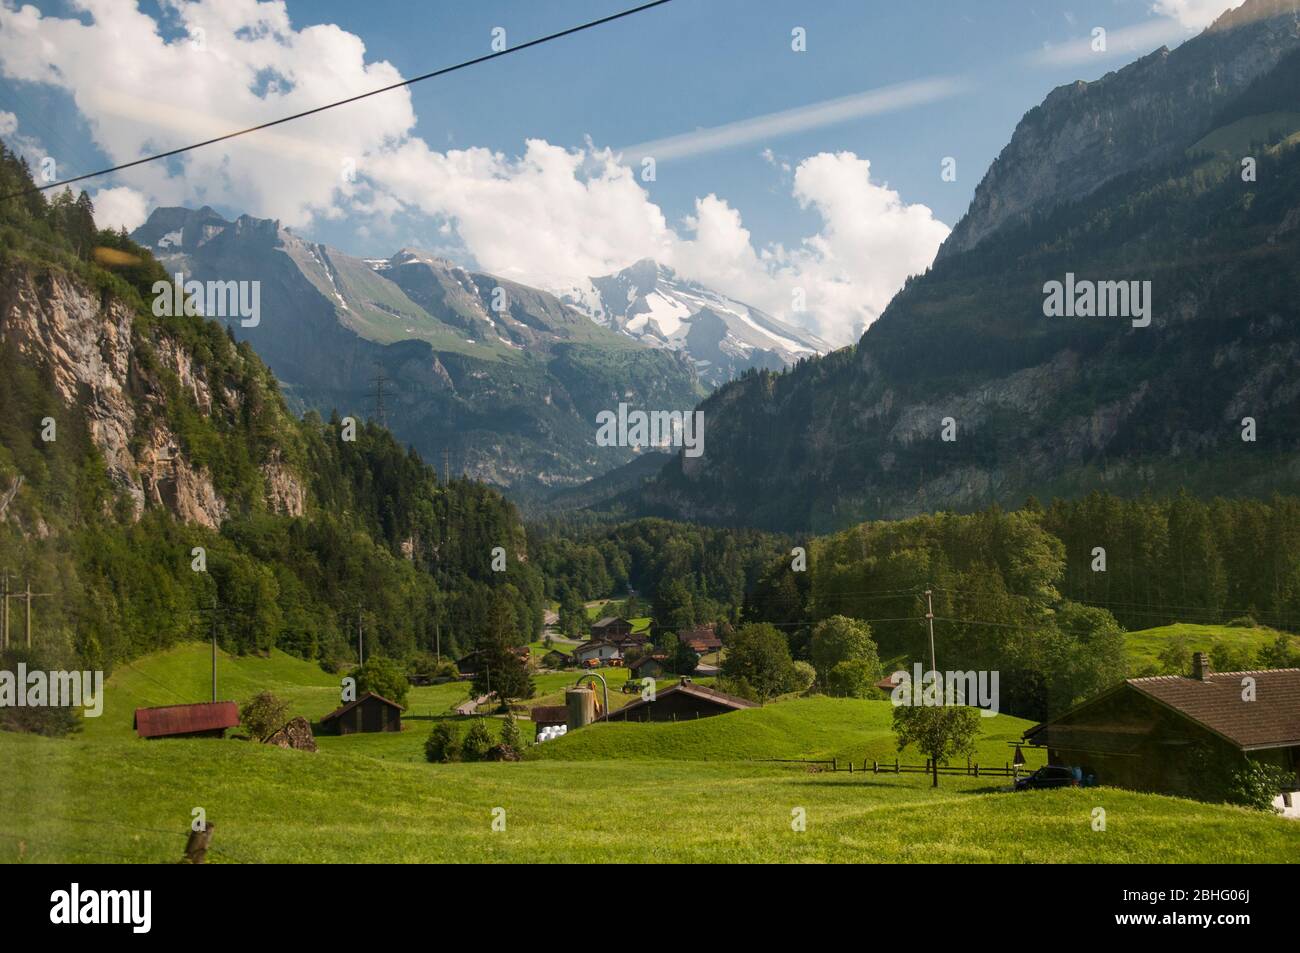 Ein Tal im Berner Oberland, Schweiz, von einem Zug irgendwo zwischen Spiez und Kandersteg aus gesehen Stockfoto